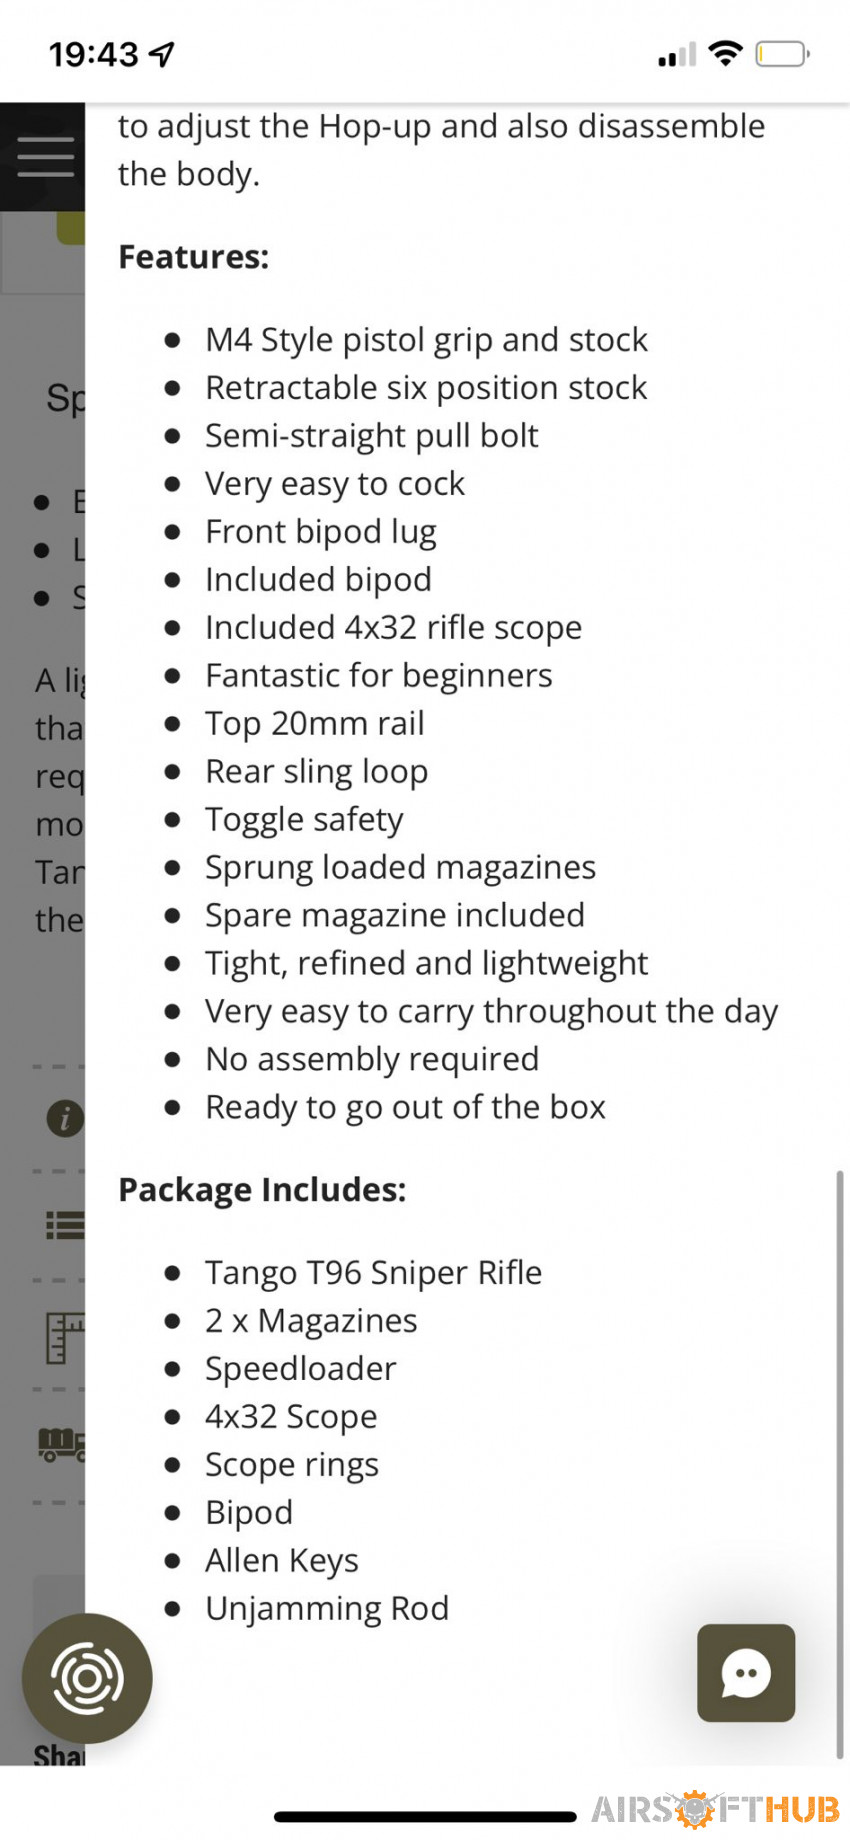 Nurpol tango series t96 sniper - Used airsoft equipment